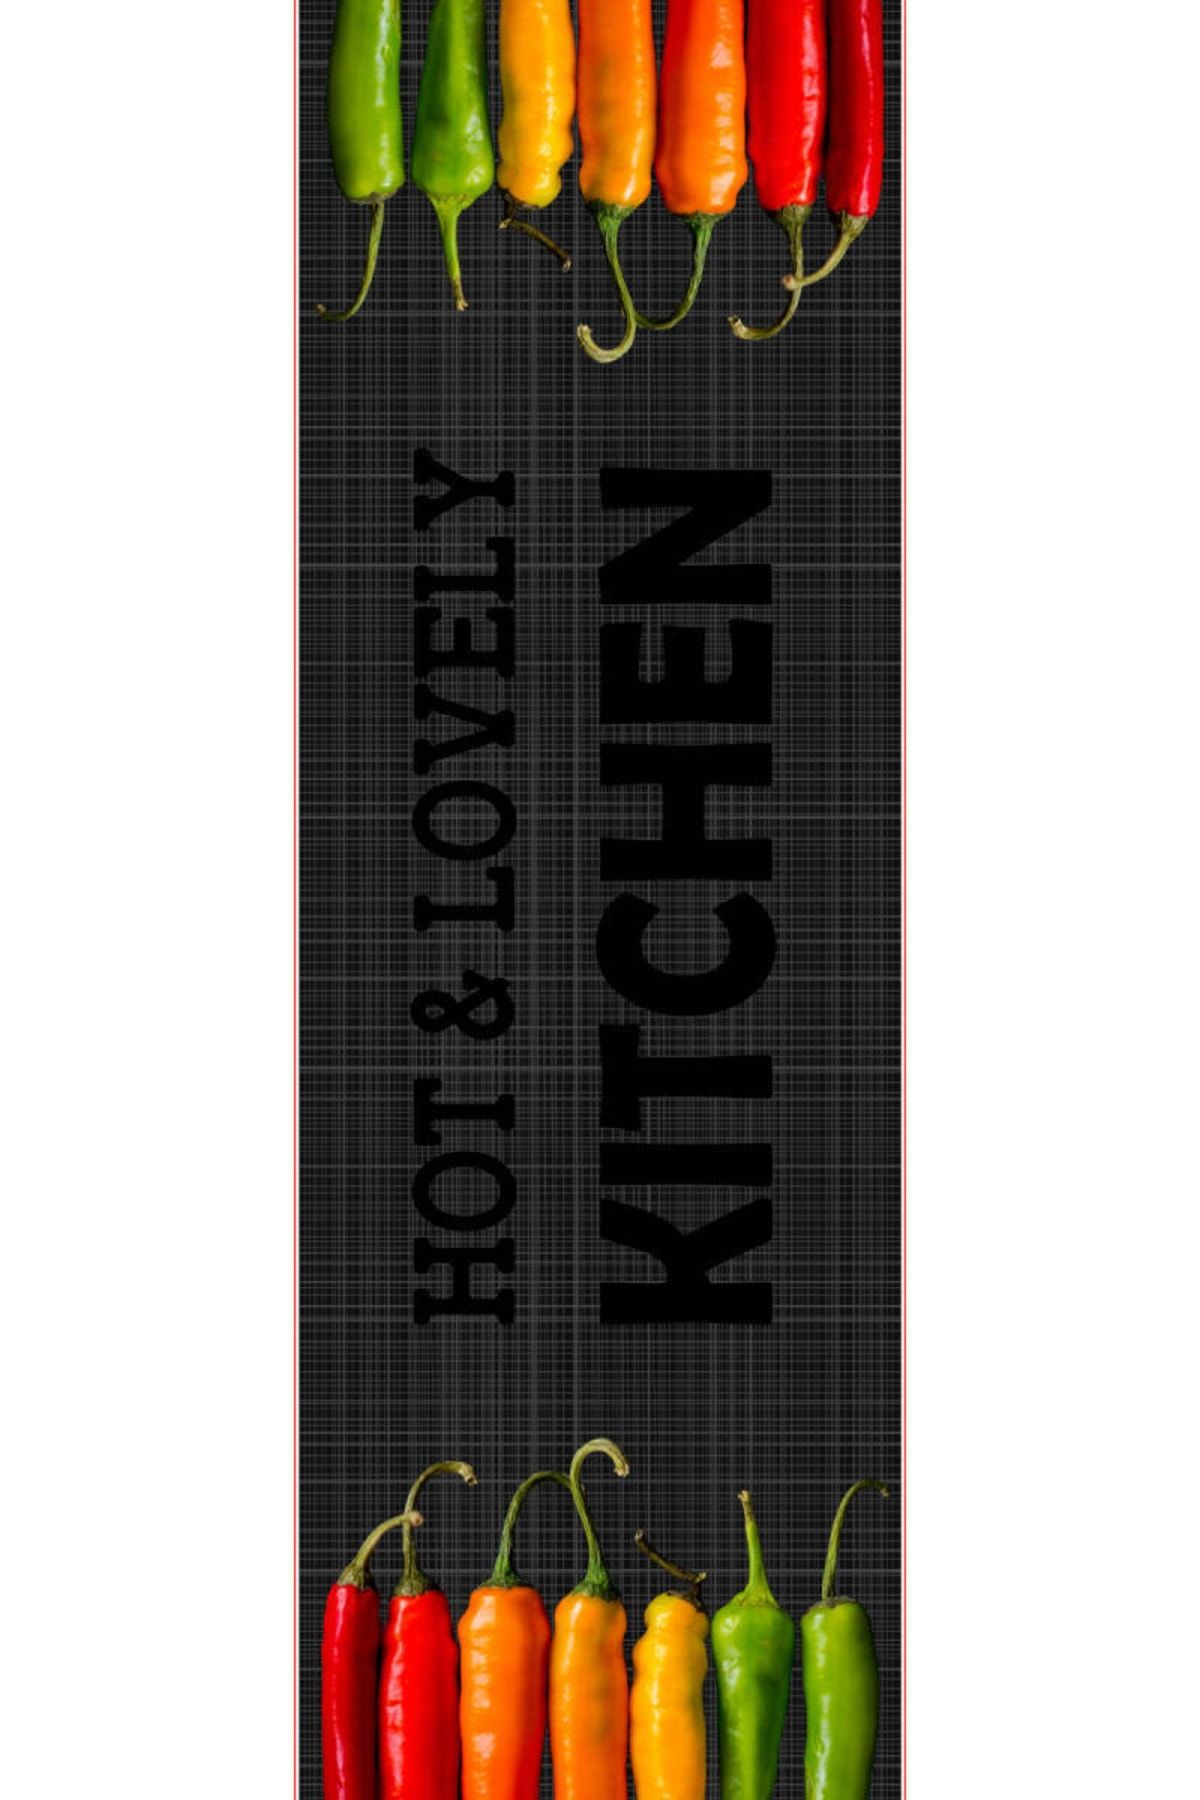 MİNK Dj Kitchen 11 Kaymaz Taban Dijital Baskı Dekoratif Mutfak Halısı